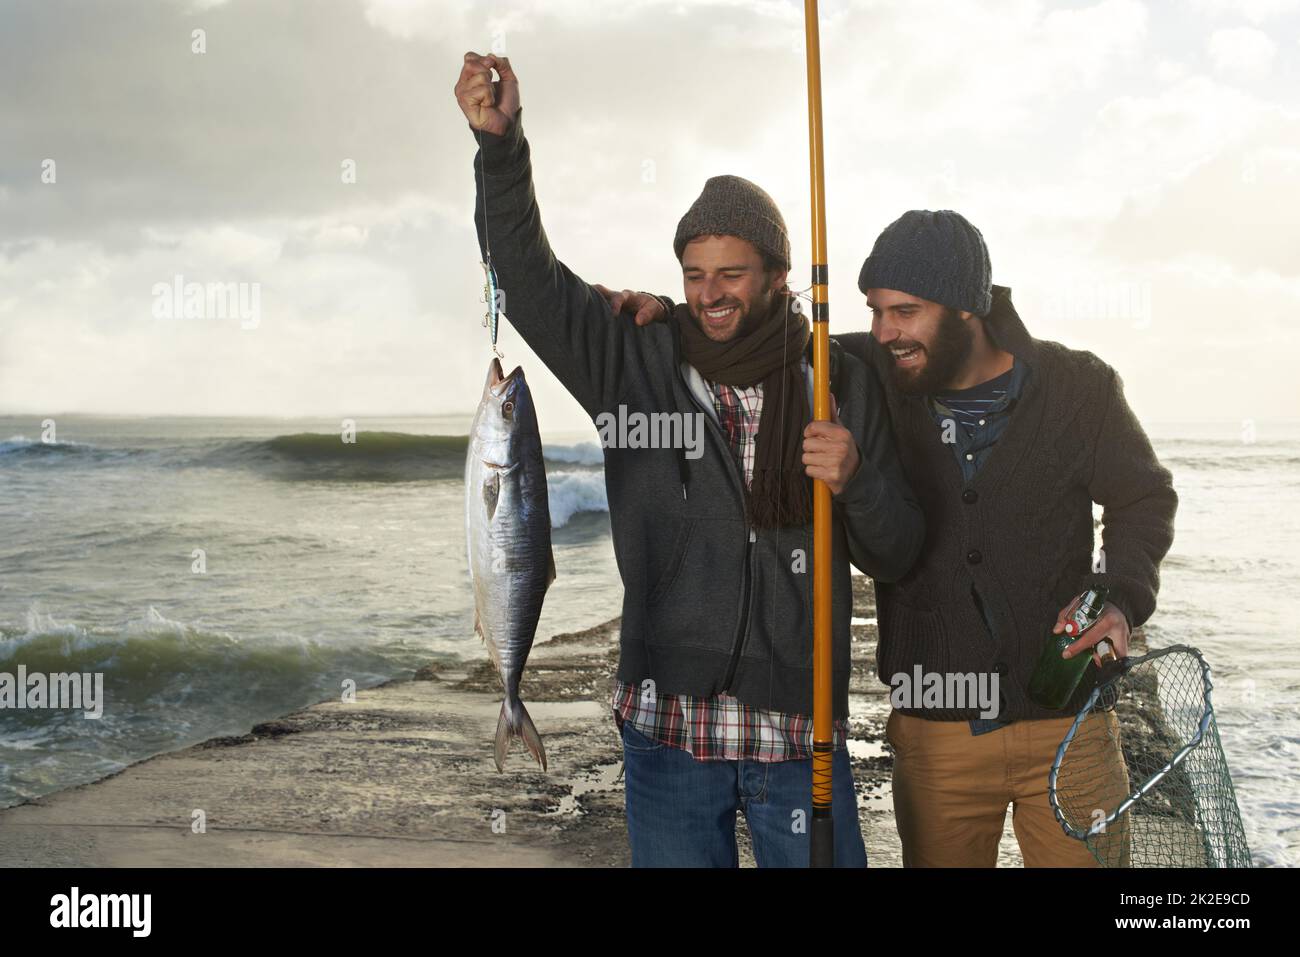 Erinnerungen, die ewig dauern werden. Aufnahme von zwei jungen Männern, die am Strand fischen. Stockfoto